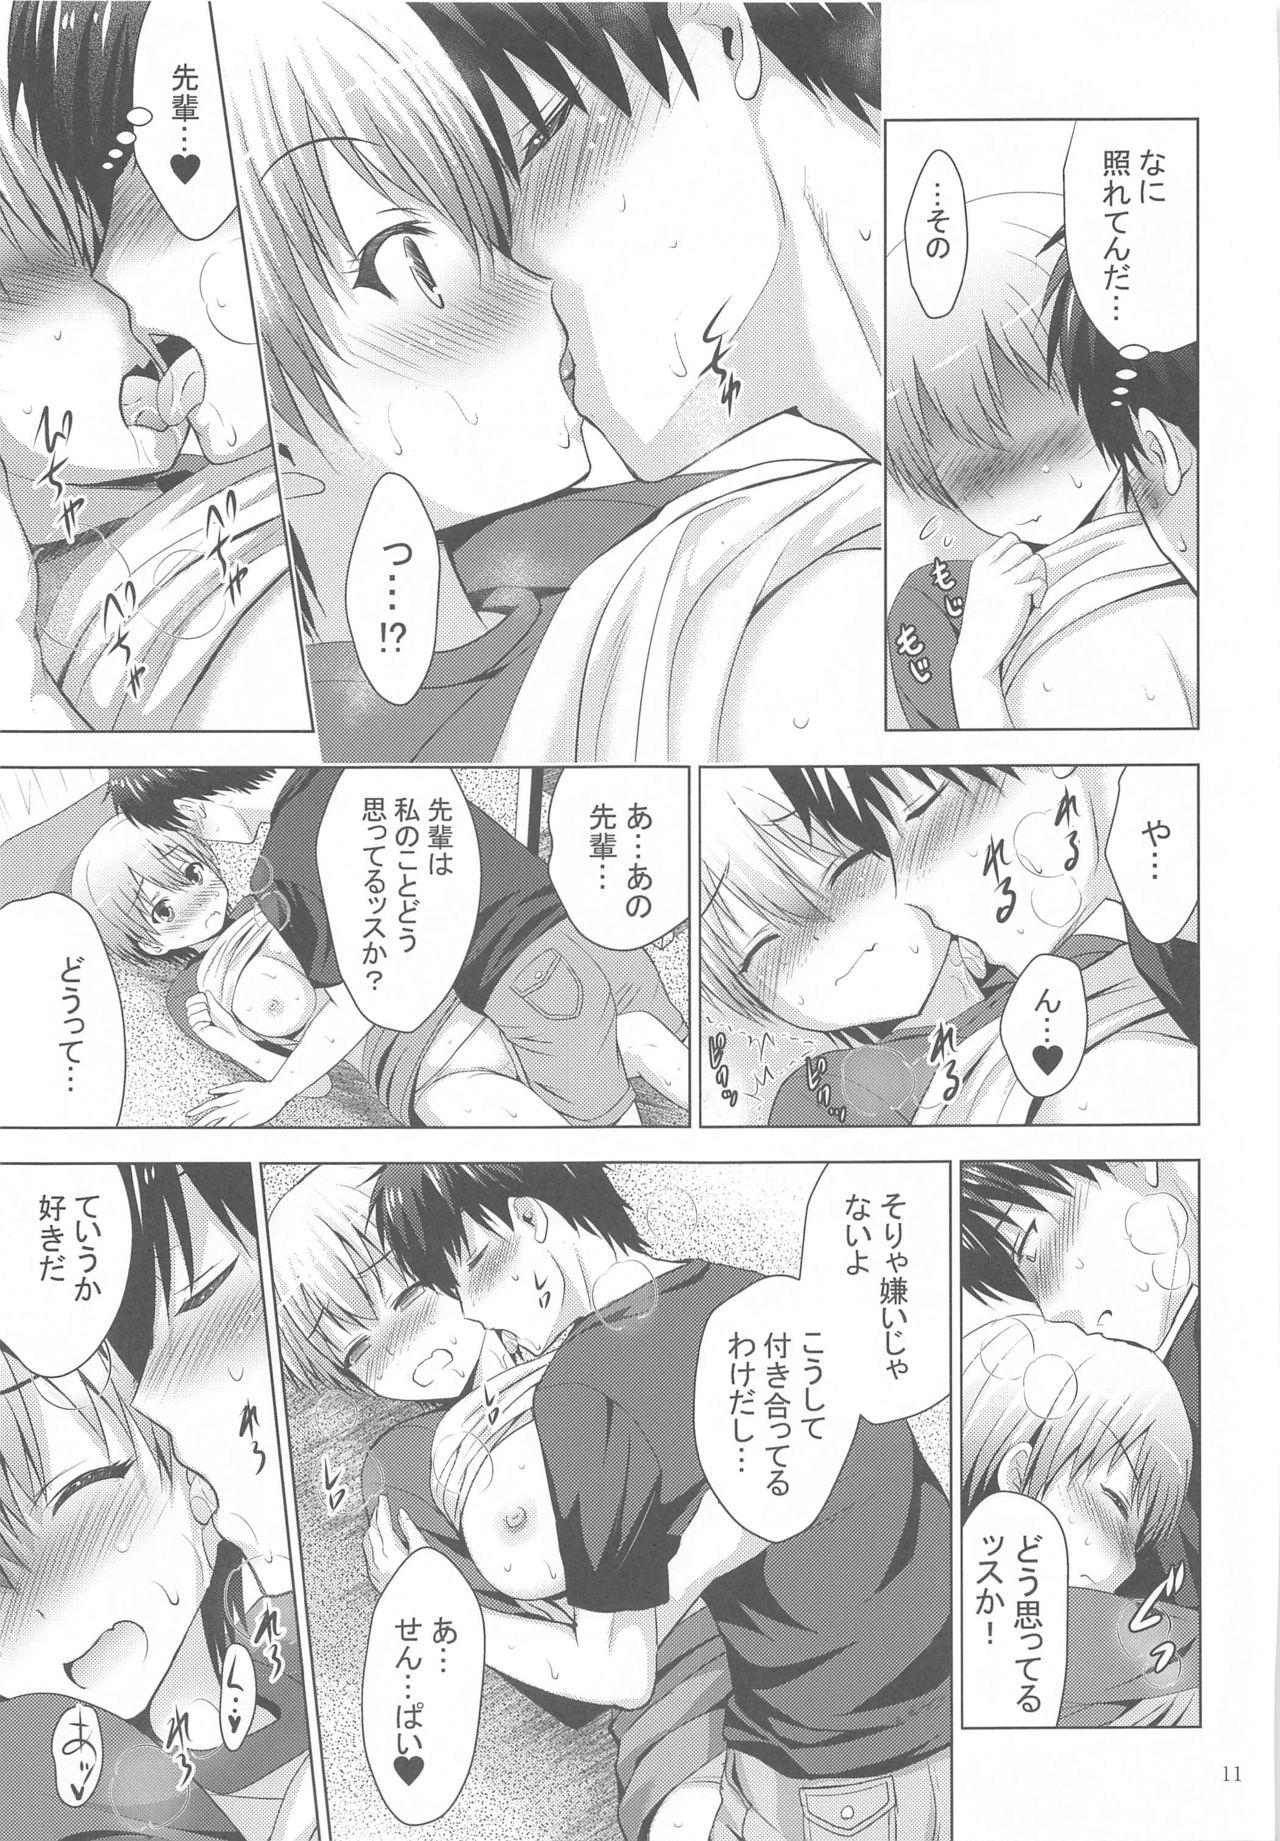 Sloppy MOUSOU THEATER 64 - Uzaki chan wa asobitai Gros Seins - Page 10